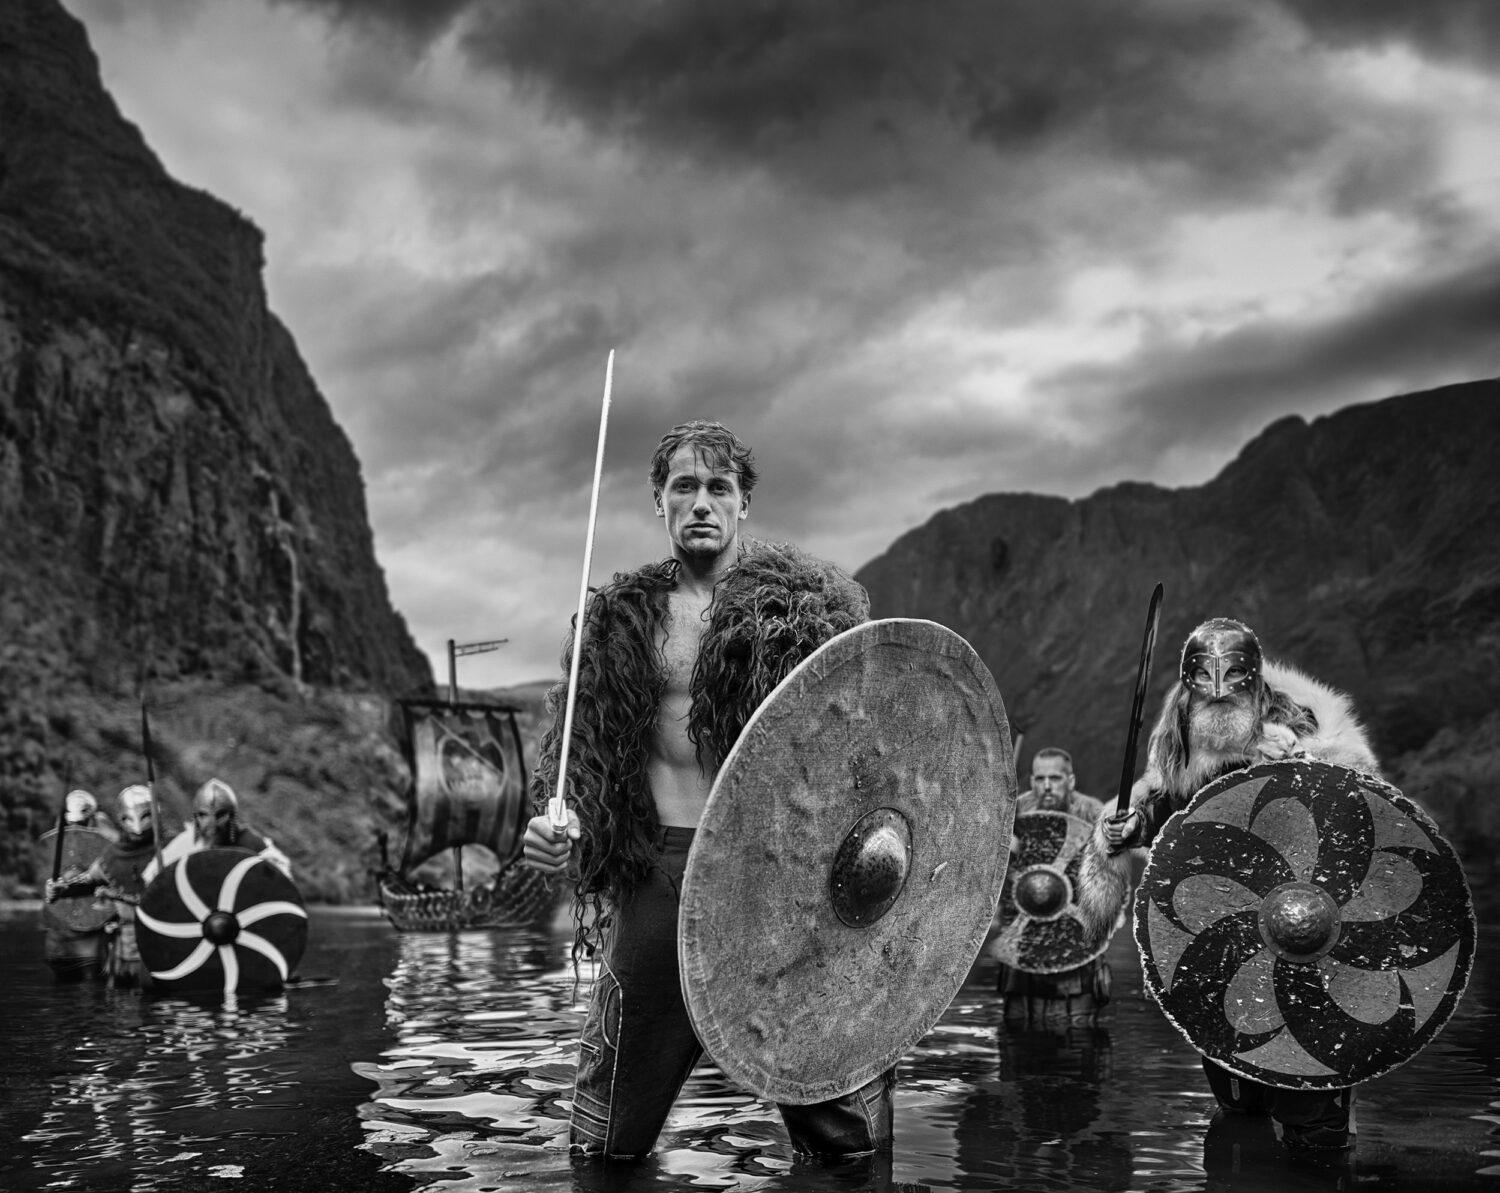 David Yarrow: The Viking